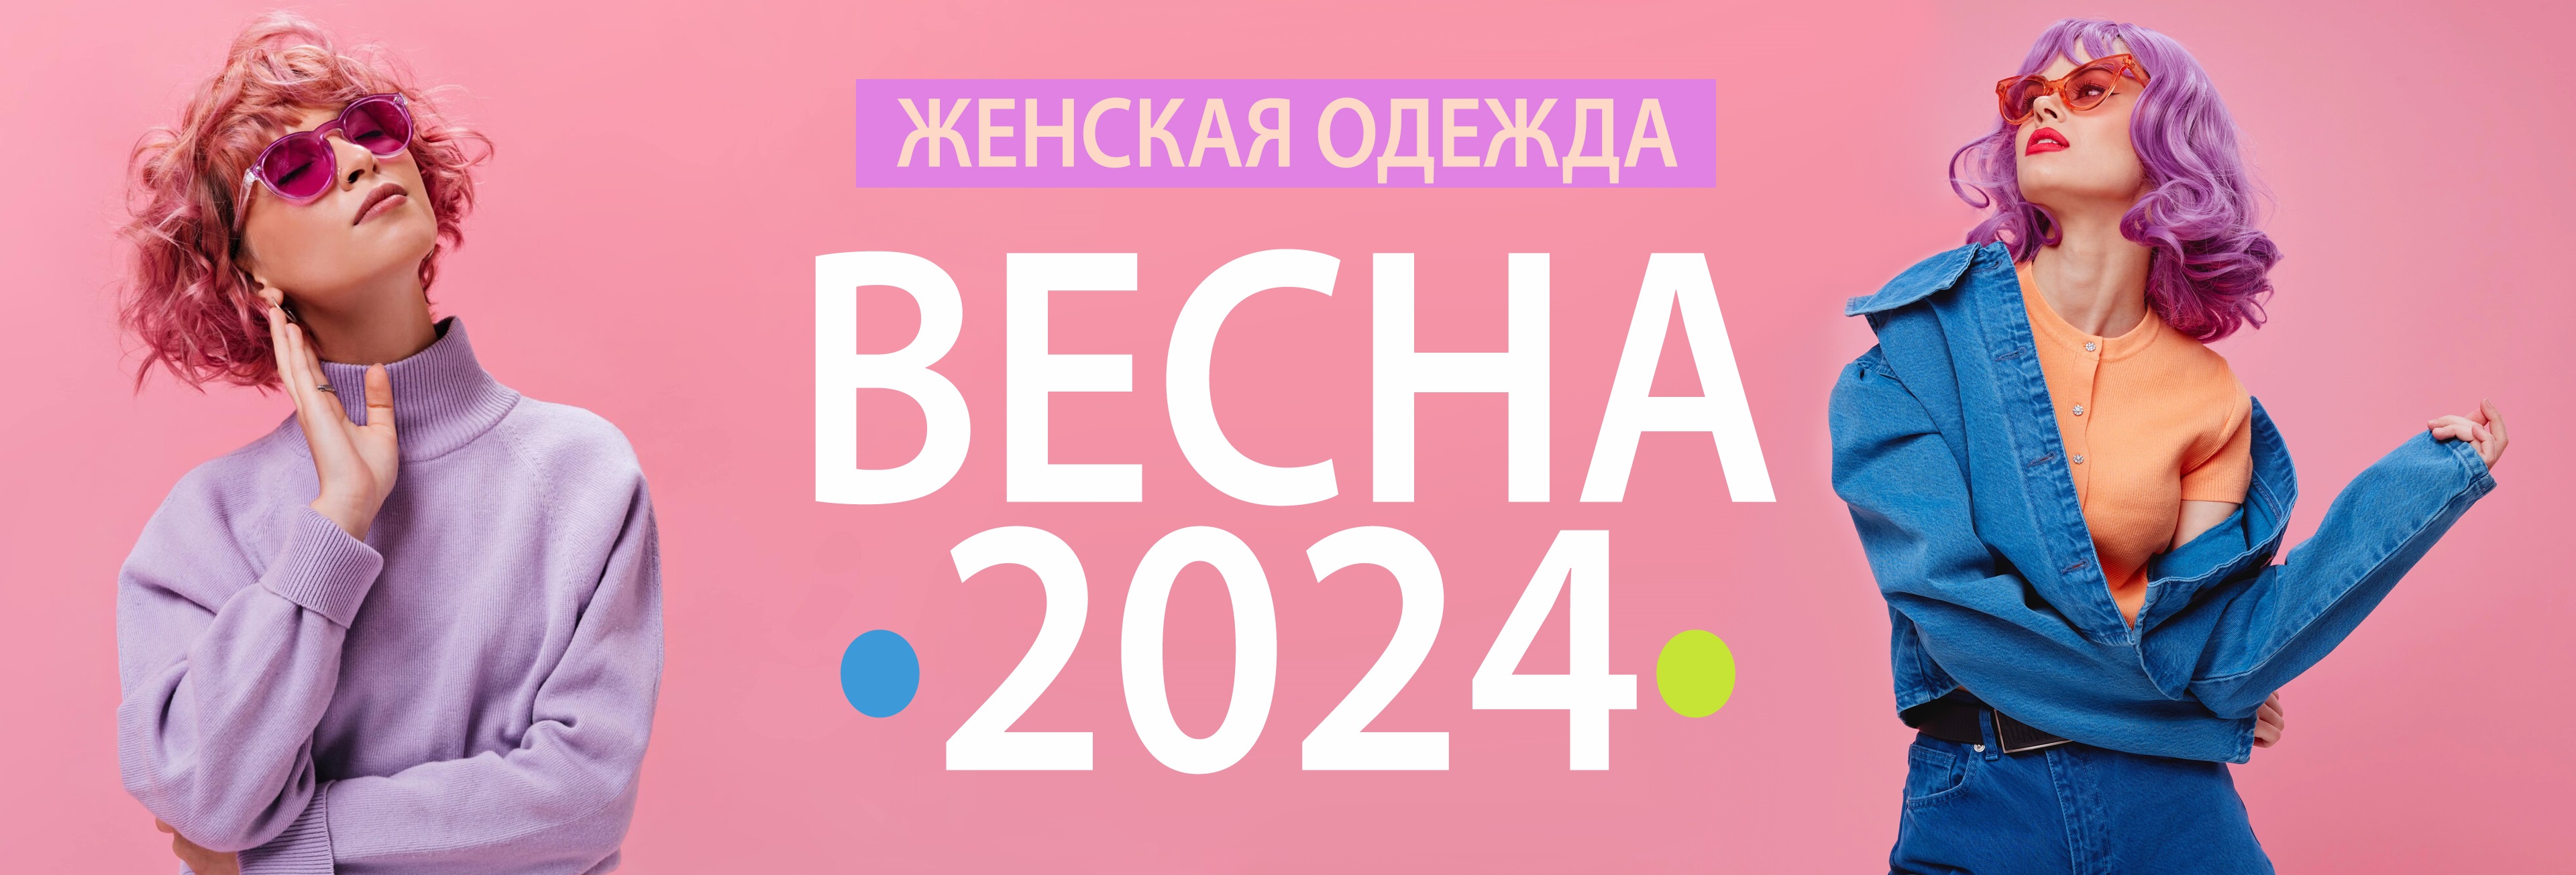 Новая коллекция женской одежды ВЕСНА-2024 на ailery.ru